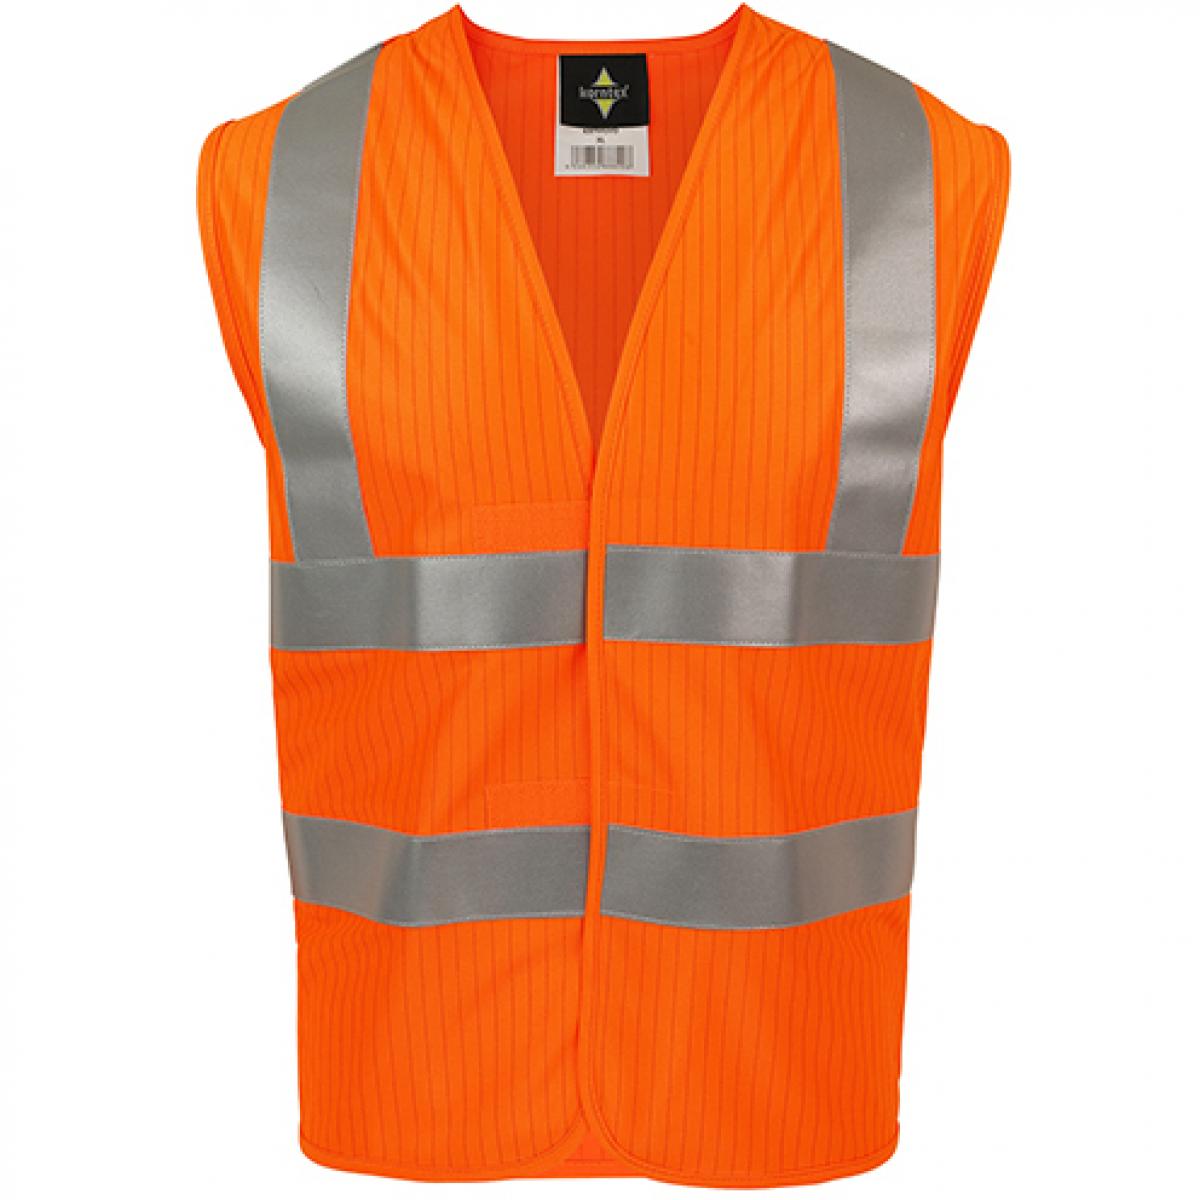 Hersteller: Korntex Herstellernummer: KXFRAS Artikelbezeichnung: Triple Norm Vest, EN ISO 20471:2013 + A1:2016 Farbe: Signal Orange